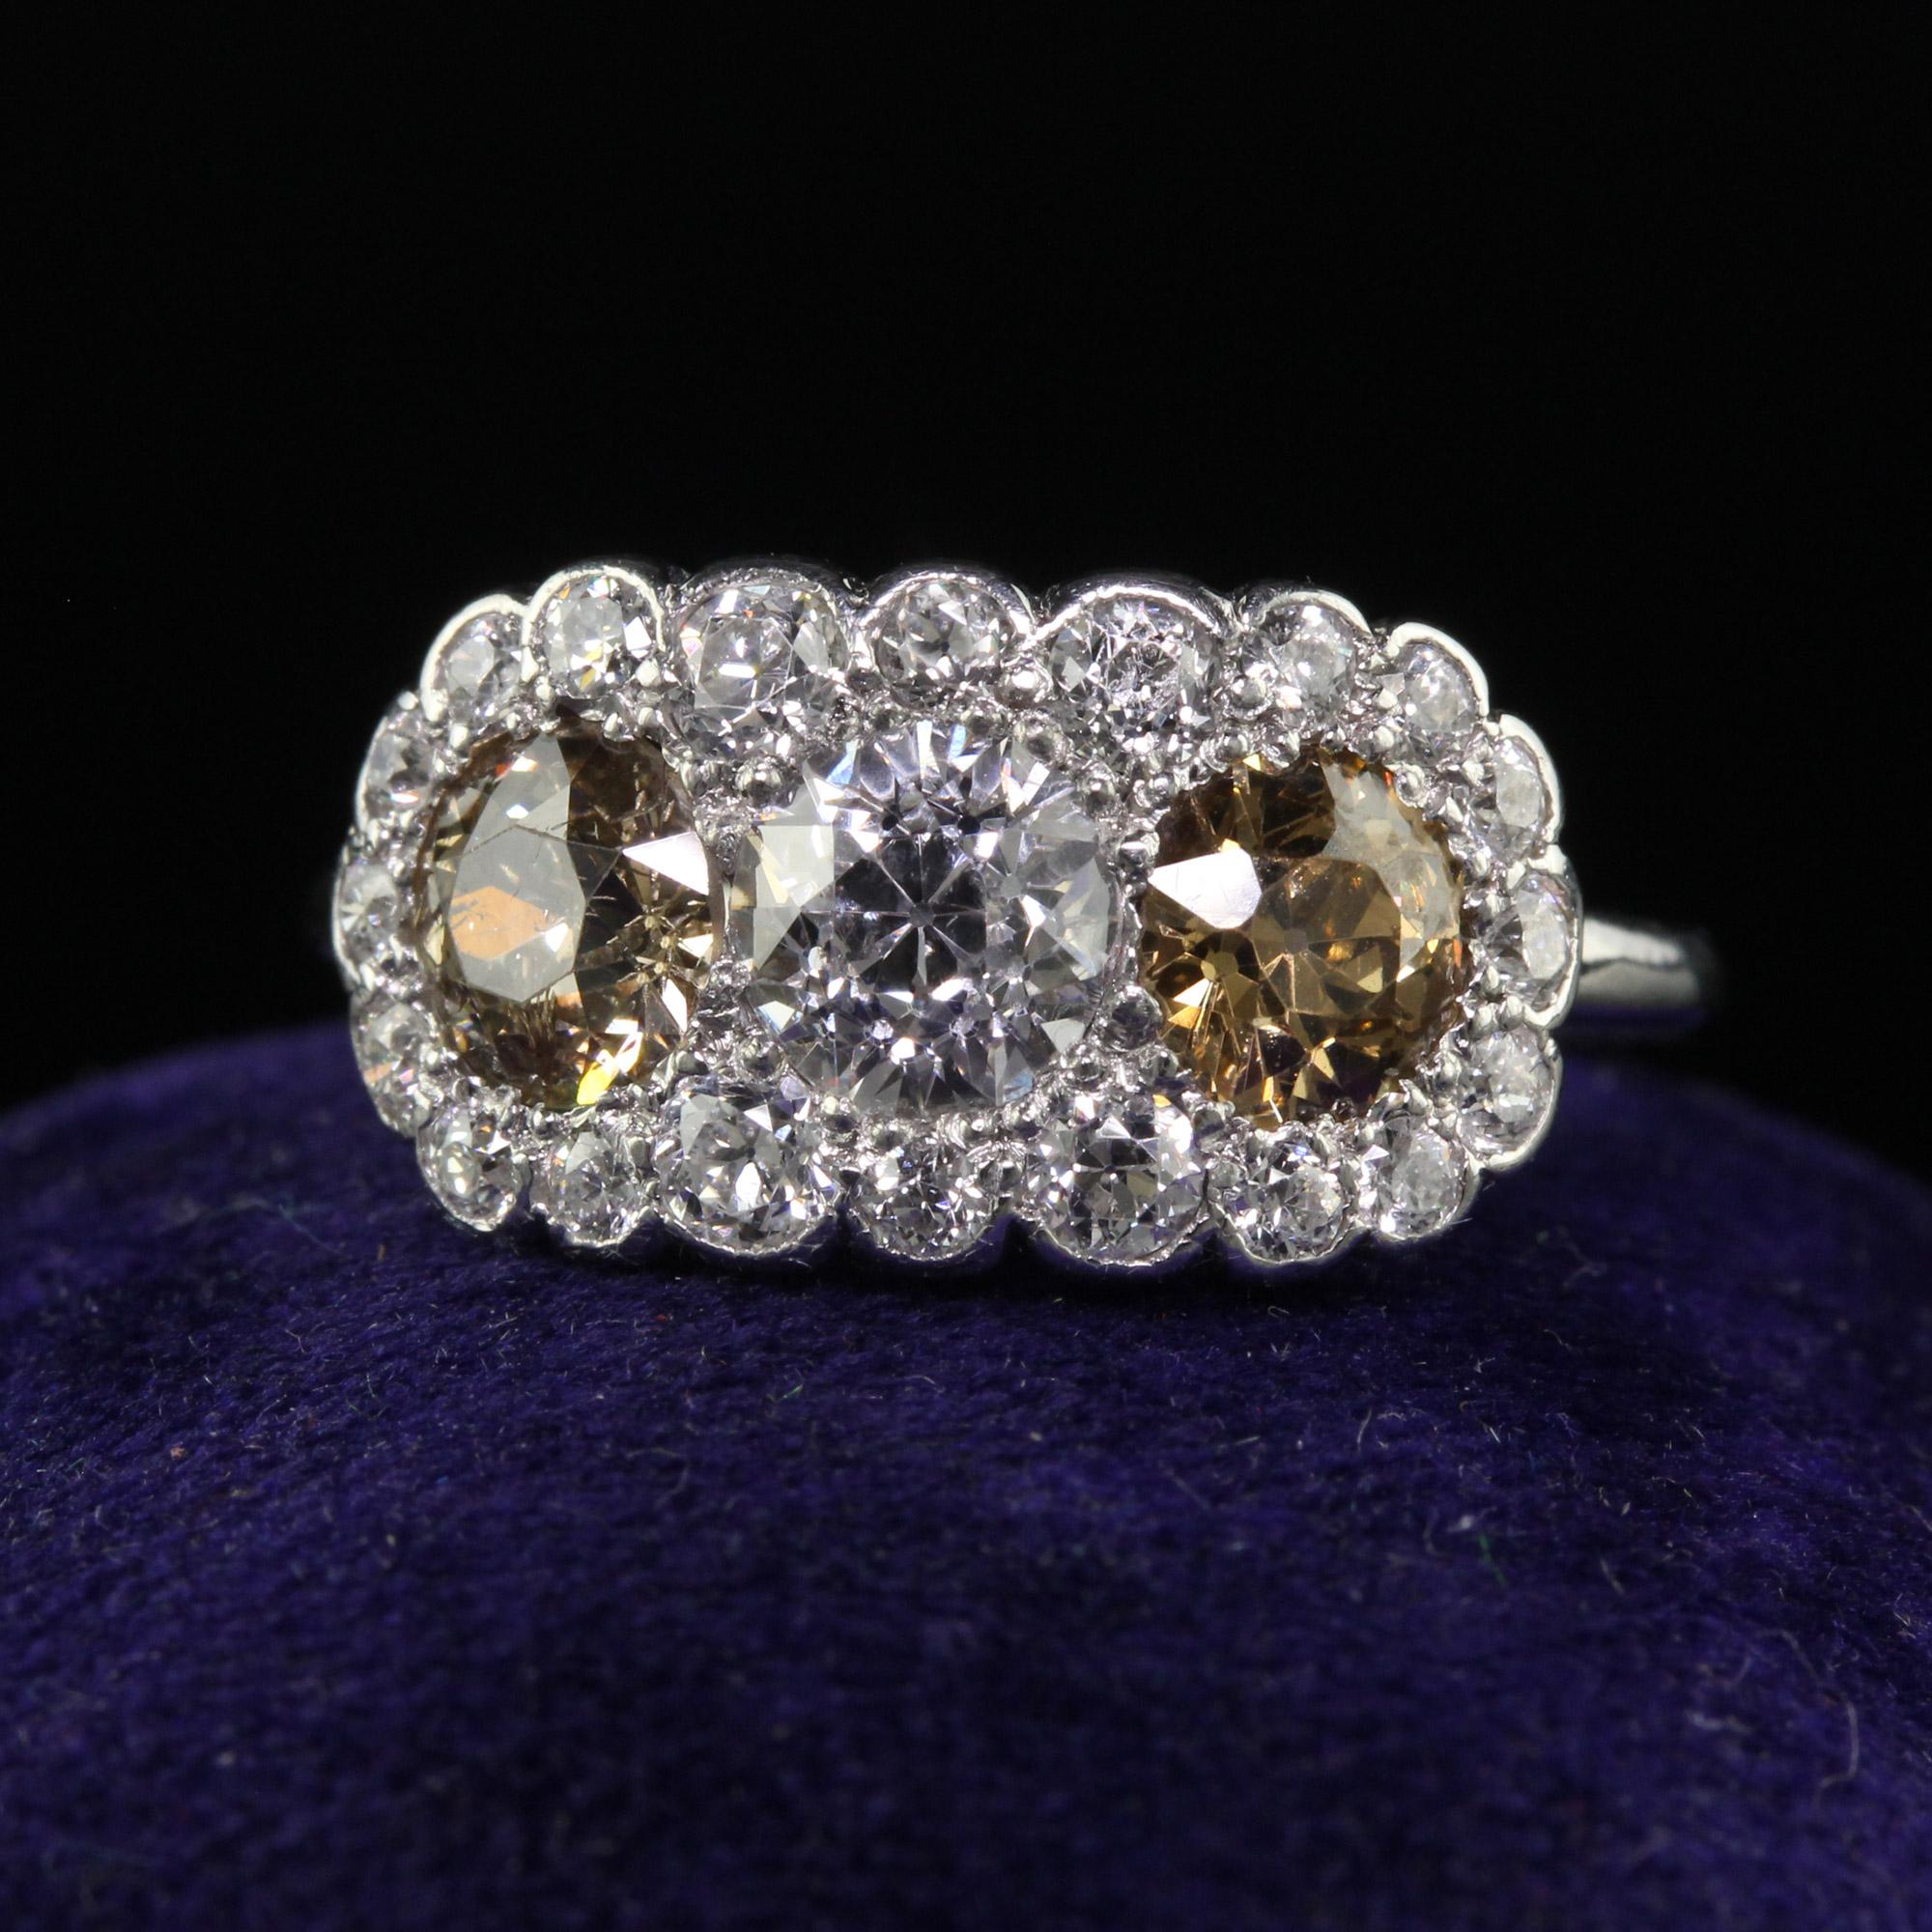 Schöne antike Art Deco Platin alten Euro Faint Pink Diamond Three Stone Ring - GIA. Dieser herrliche Art-Deco-Ring mit drei Steinen ist aus Platin gefertigt. Der obere Teil des Rings ist mit drei natürlichen Diamanten im alten europäischen Schliff